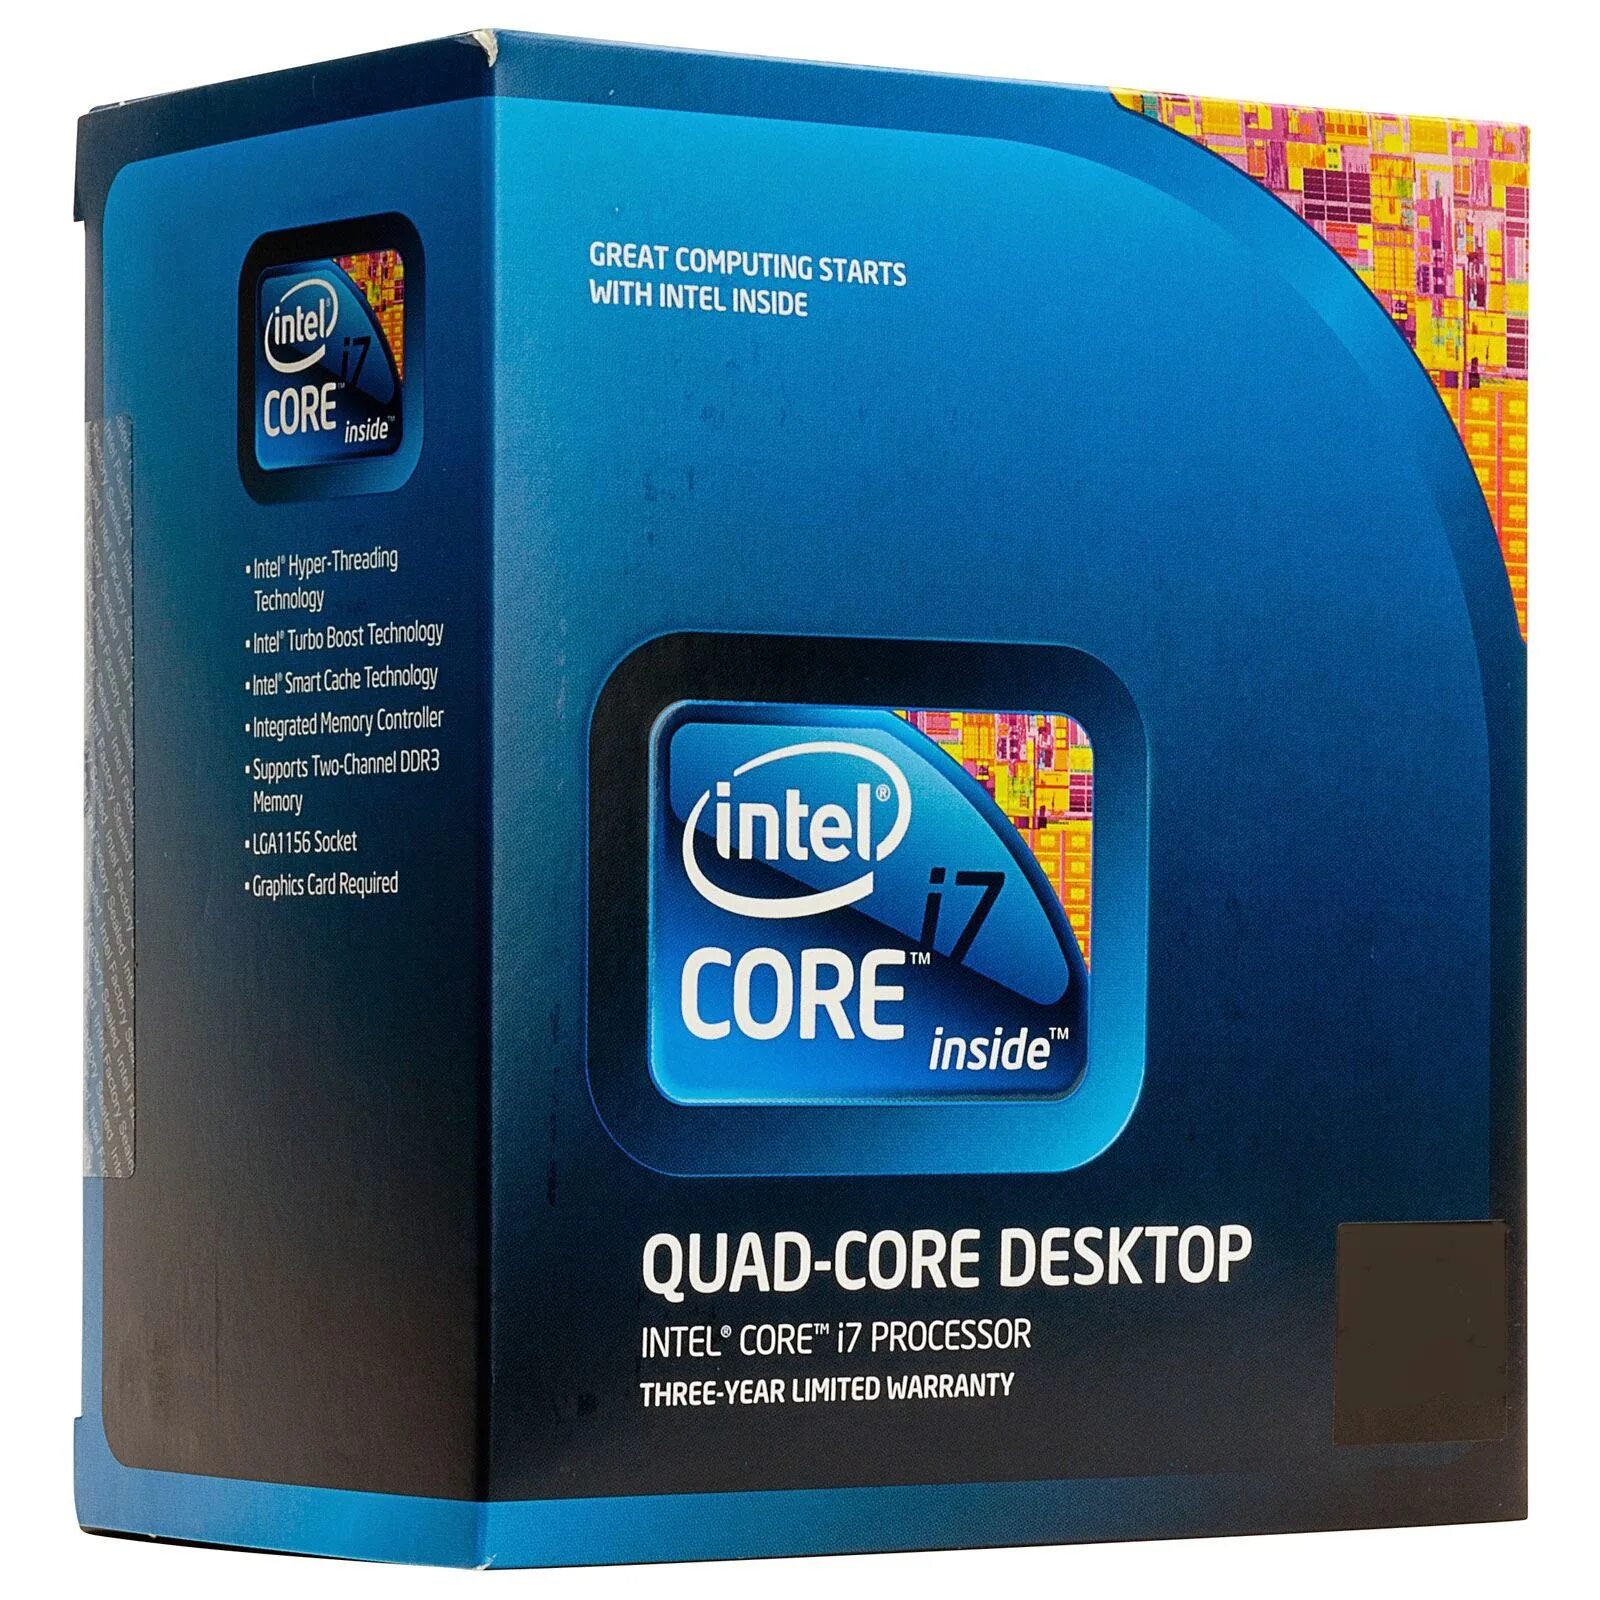 Intel core i7 частота. Intel Core i7 3000. Intel Core i7 ДНС. Intel Core i7 4780k. Intel Core i7 Box.